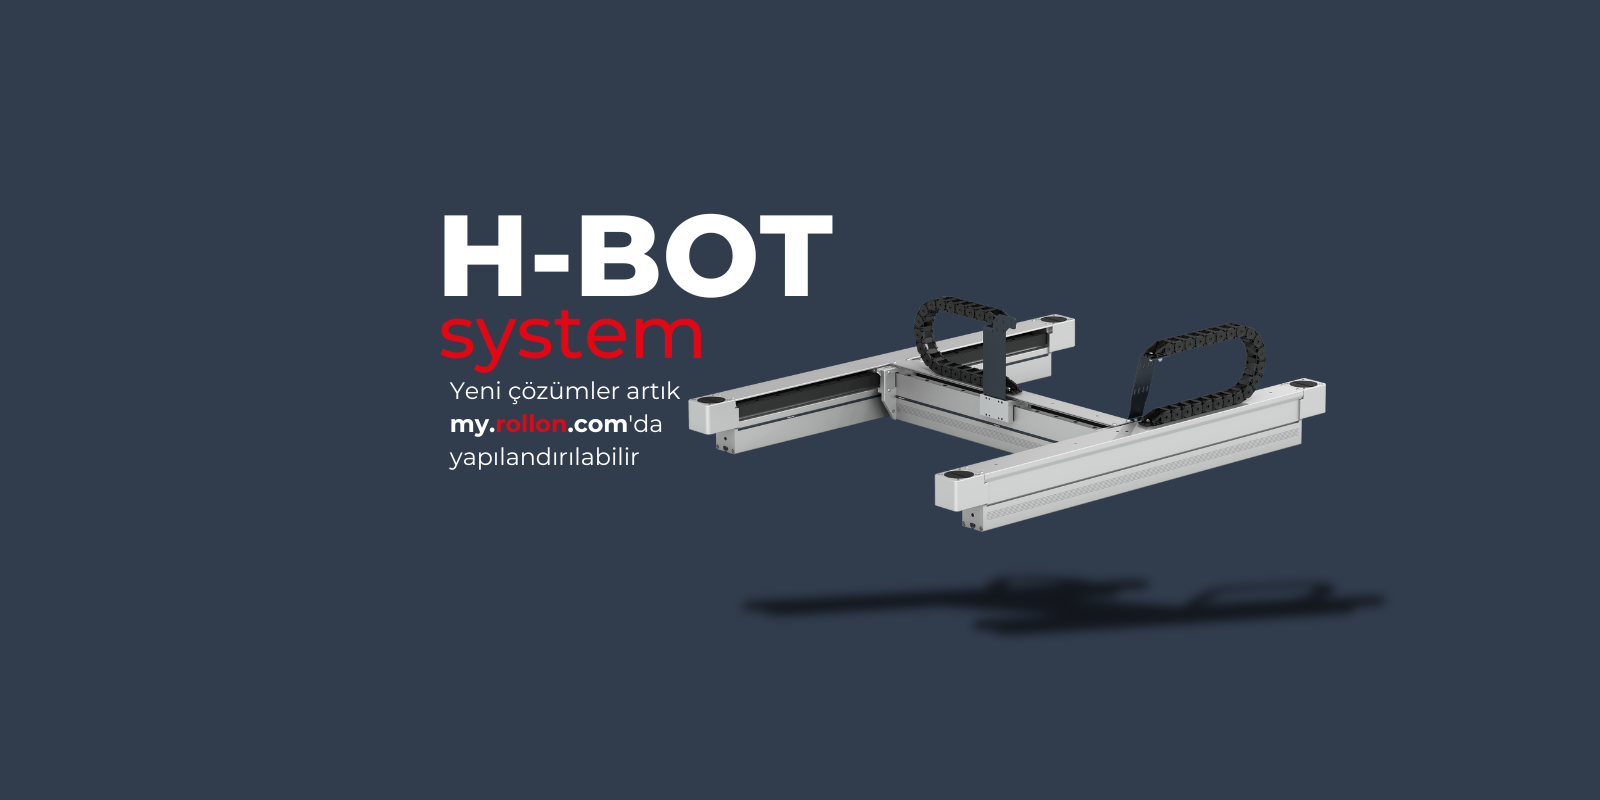 Yeni H-Bot gantry sistemini keşfedin